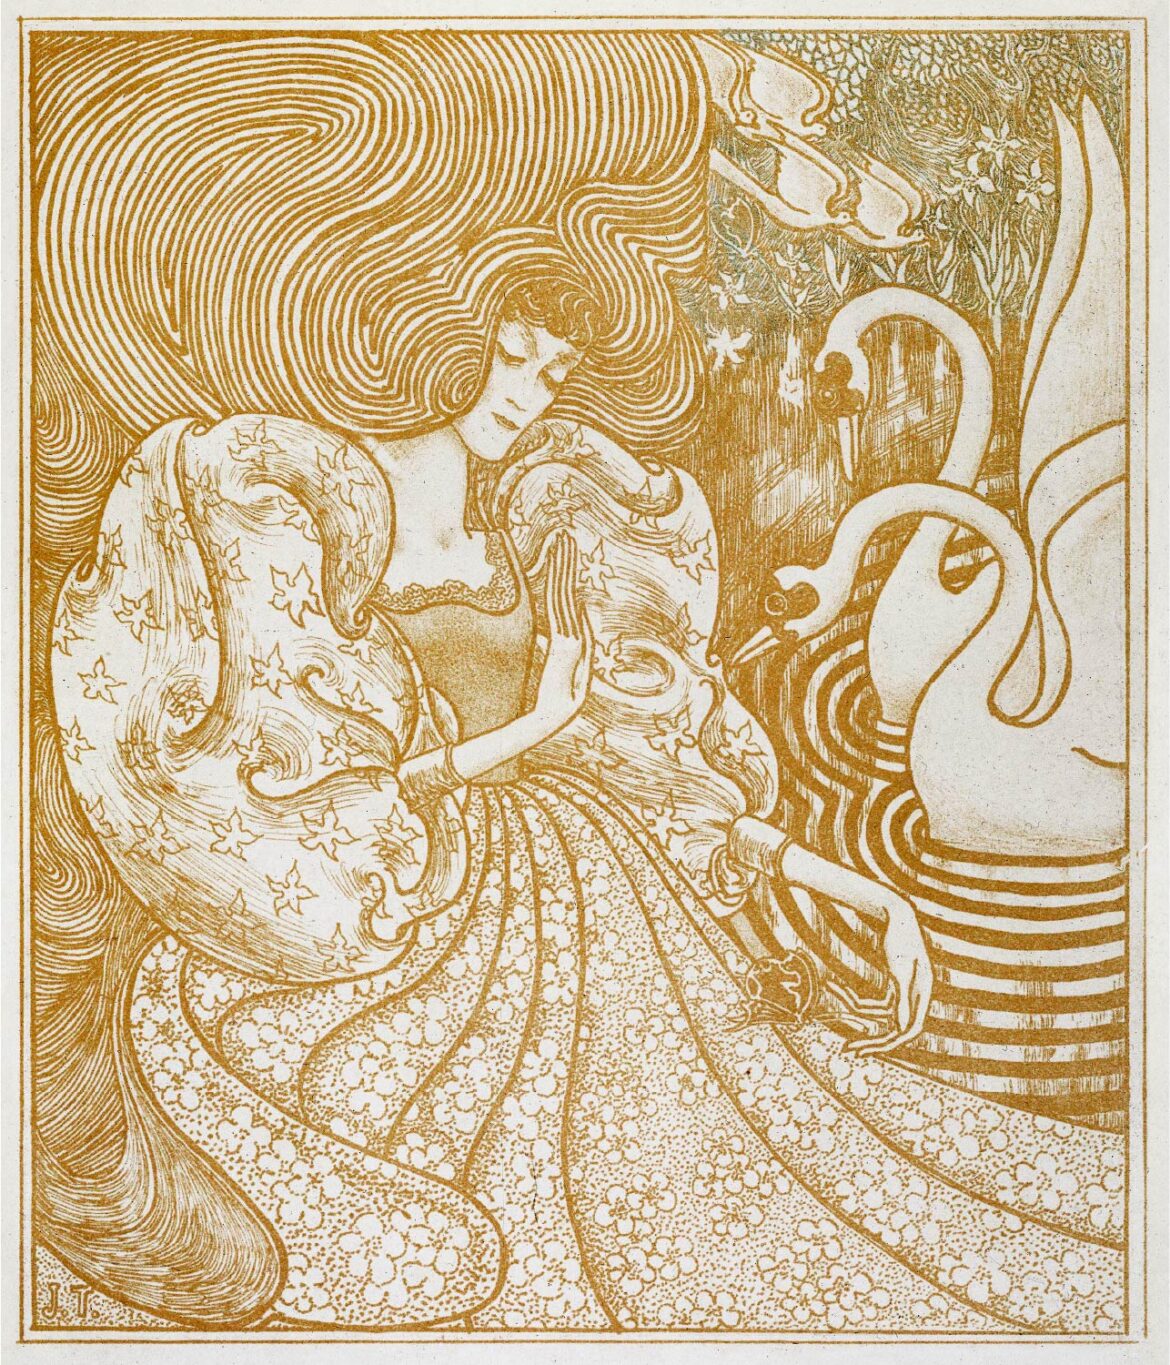 【無料壁紙】ヤン・トーロップ「白鳥のいる池で蝶を待つ女 (1894)」 / Jan Toorop_Woman with a Butterfly at a Pond with Two Swans (1894)